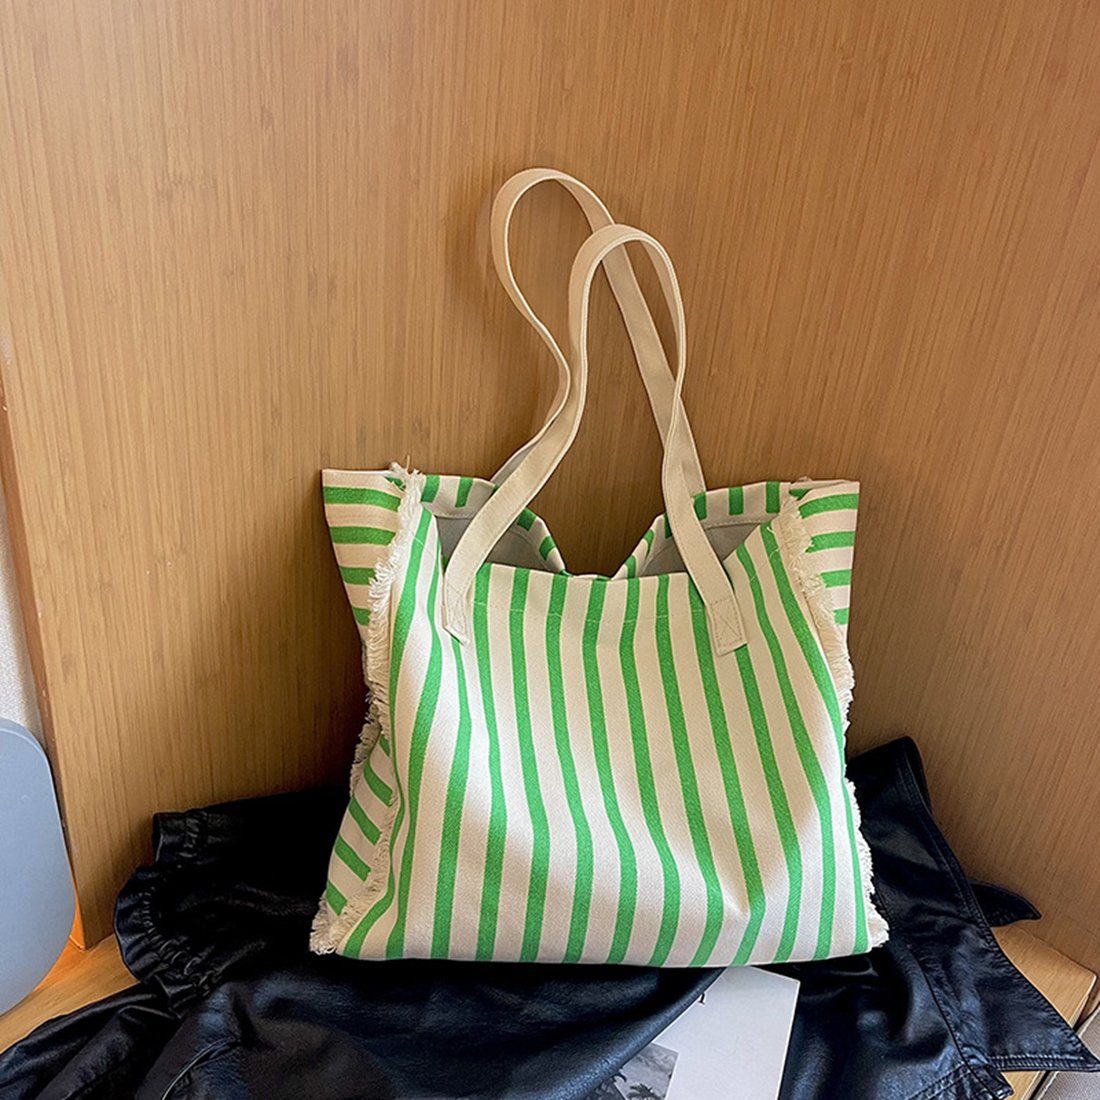 Groß Innentasche Umhängetasche für Damen,Lässige Tasche, green Haiaveng Segeltuch Tote mit Handtasche Schultertasche Umhängetasche Shopper